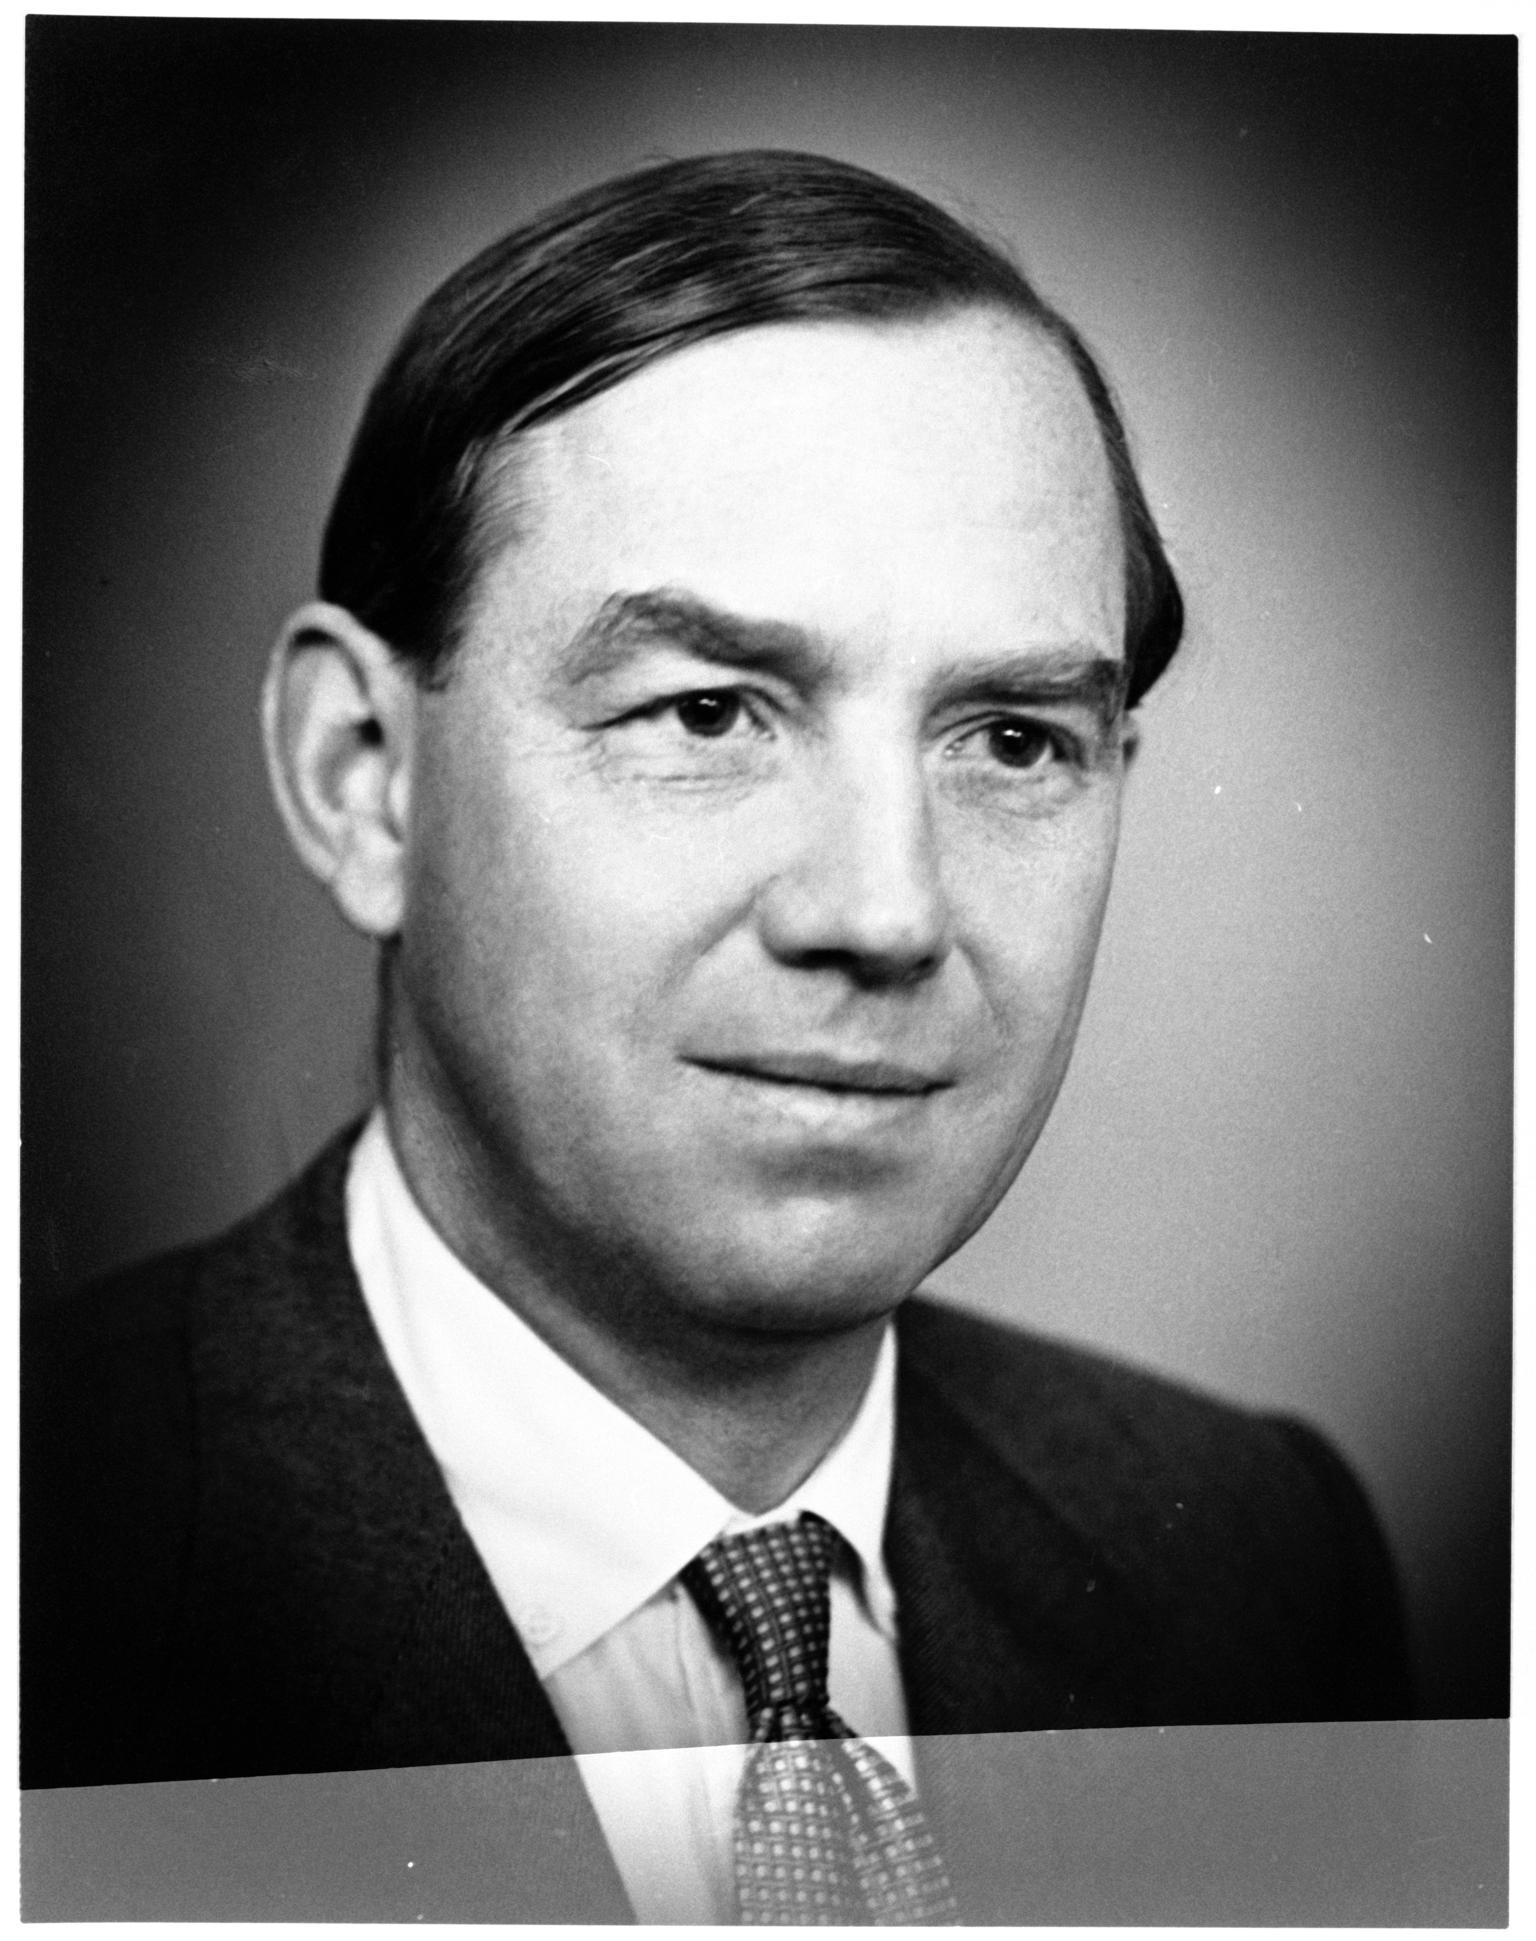 Alan John Reardon-Smith, 1914-1970, photograph